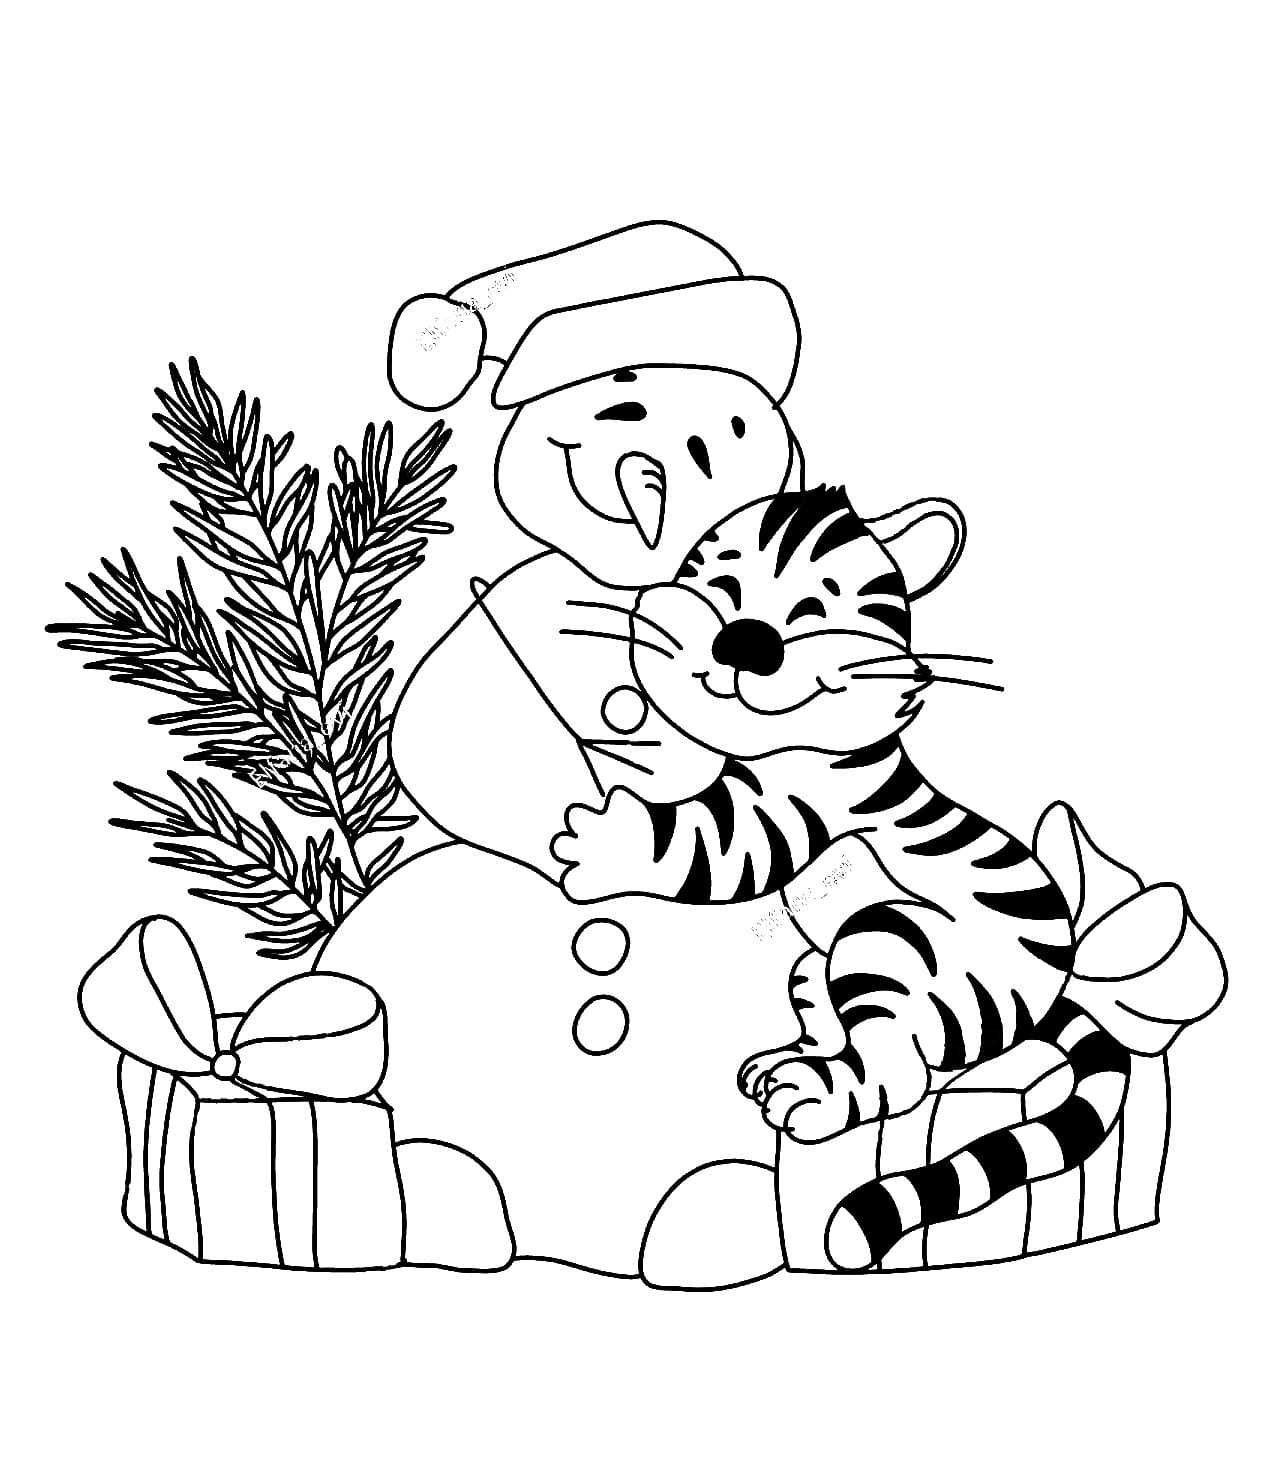 Тигр зимой раскраска